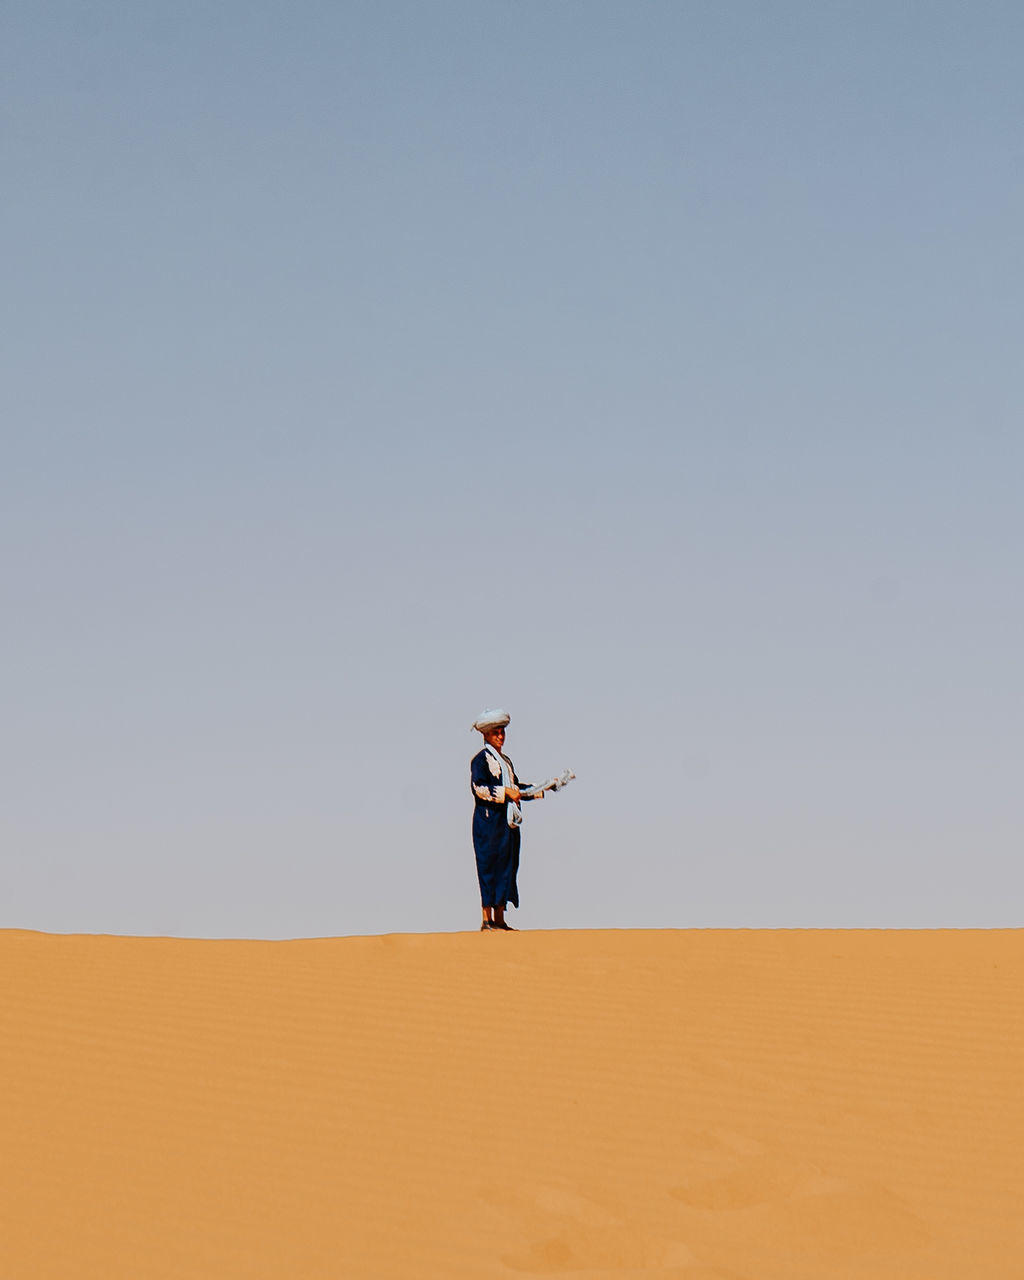 FULL LENGTH OF MAN STANDING ON SAND DUNE